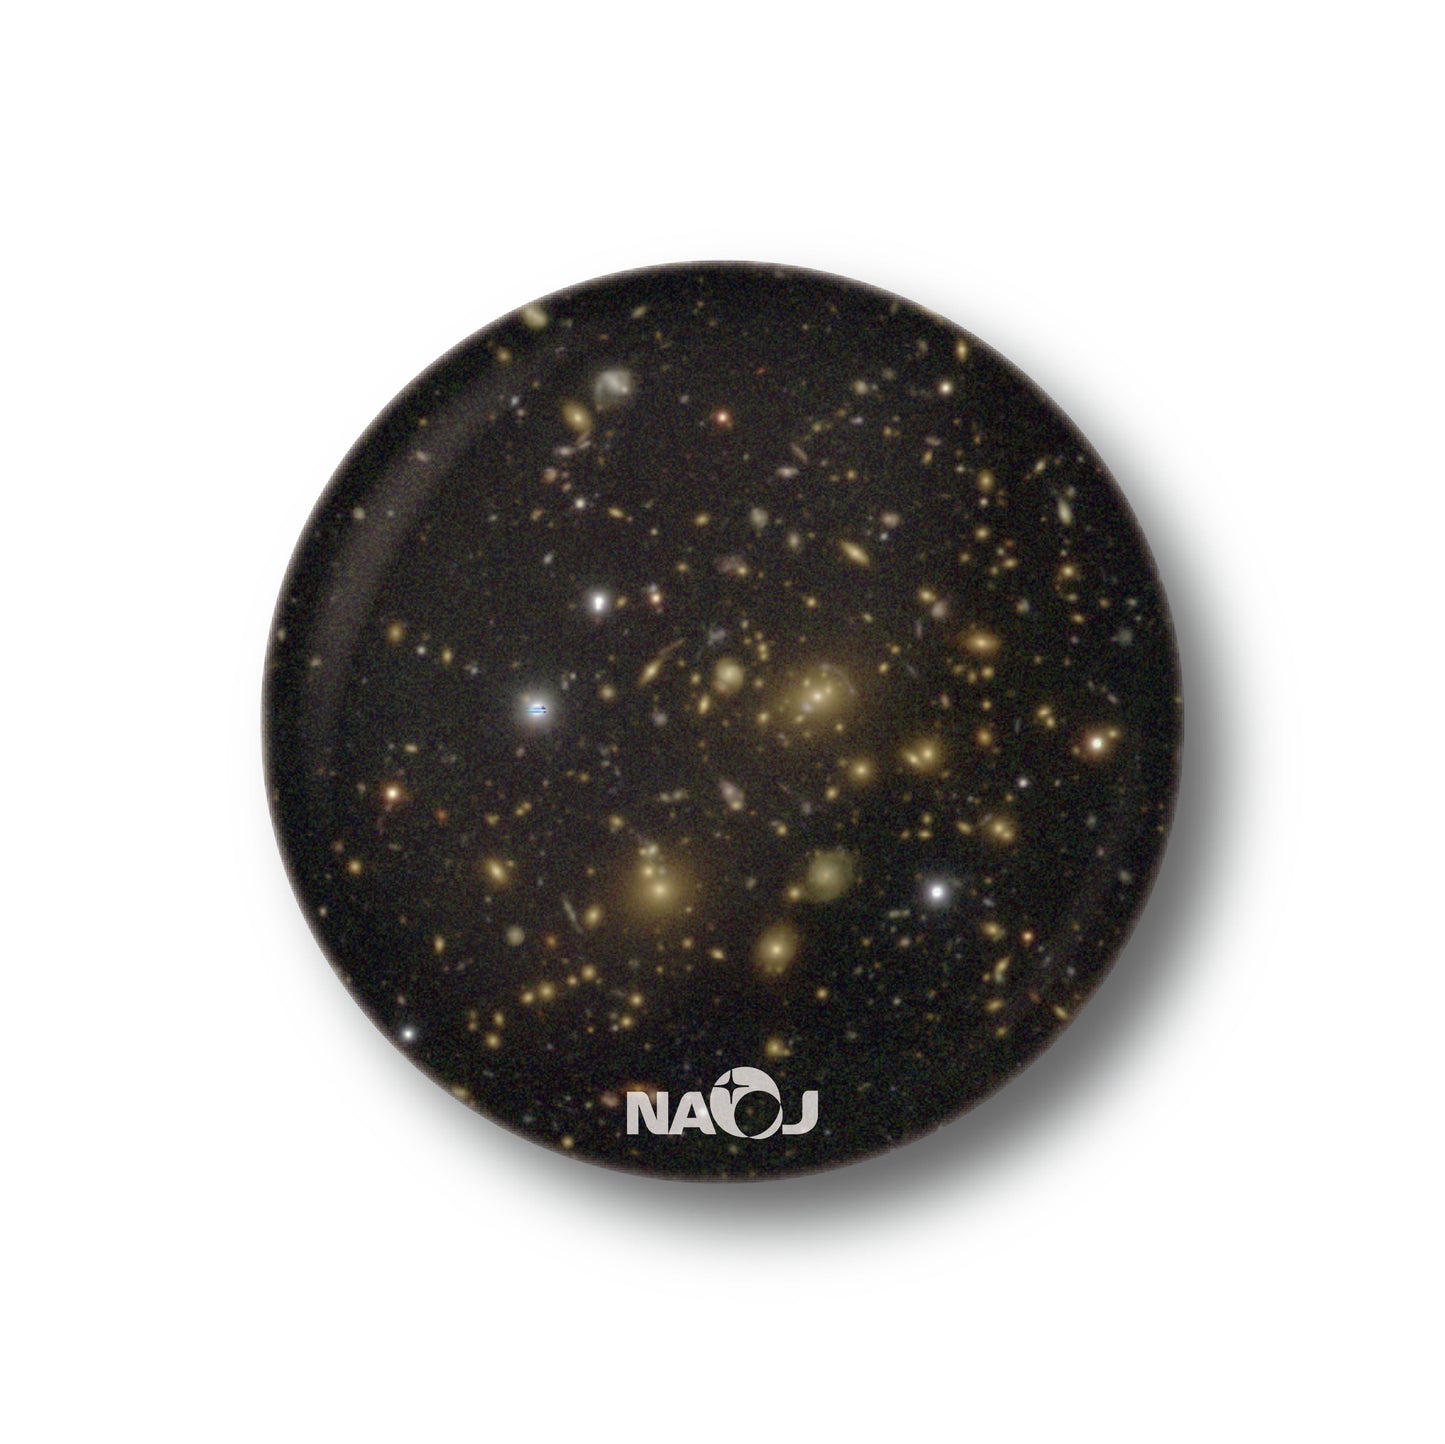 国立天文台  すばる望遠鏡HSCで見る宇宙  缶バッジ [小] 重力レンズ SDSSJ115214.19+003126.5 01